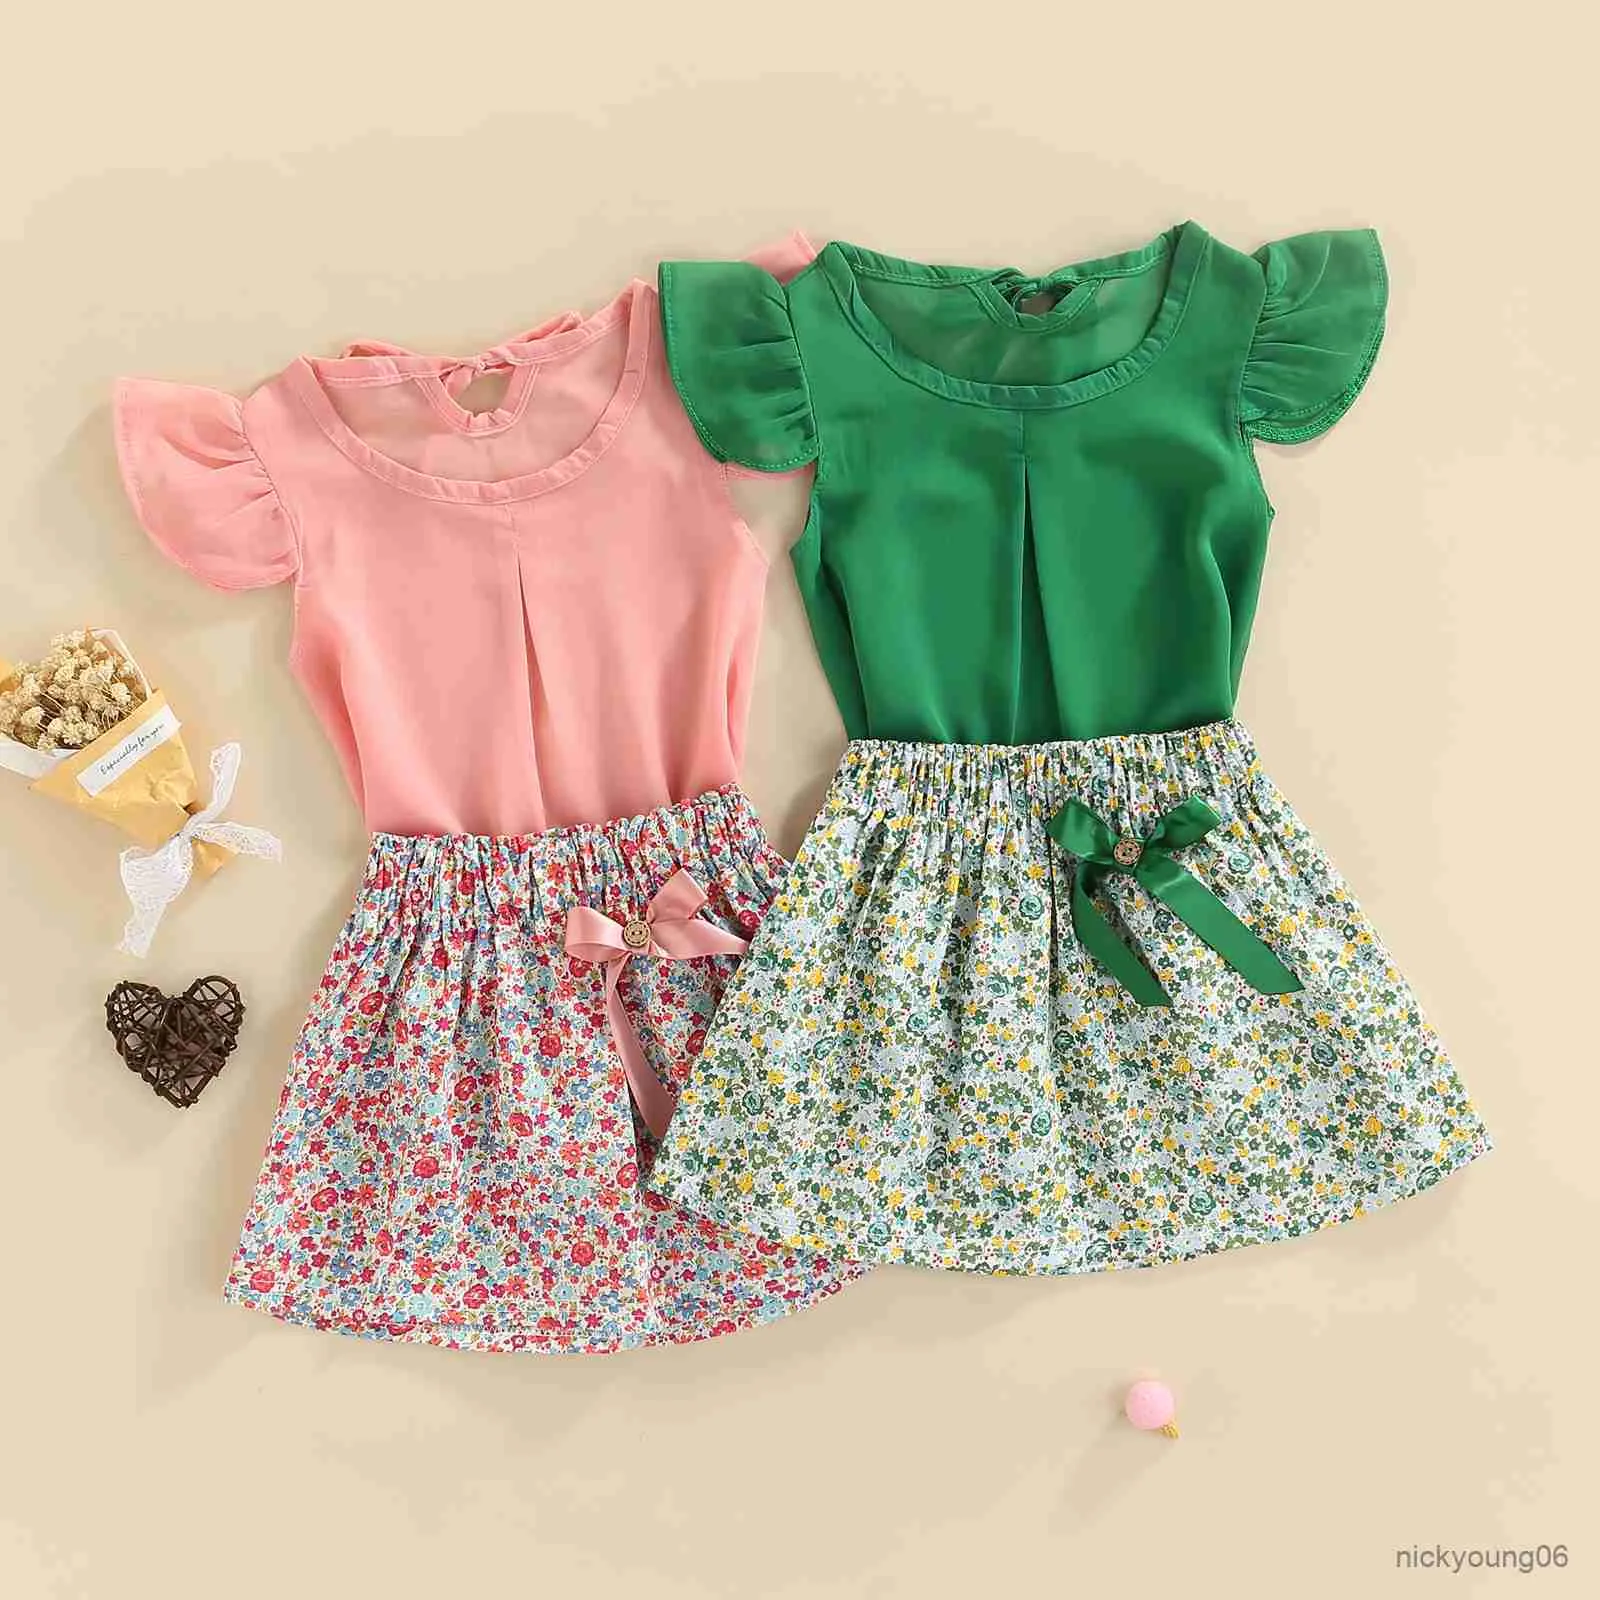 衣類セット2PCS幼児の子供の女の子の夏の服フライスリーブソリッドカラーTシャツトップと花柄のミニスカートセット